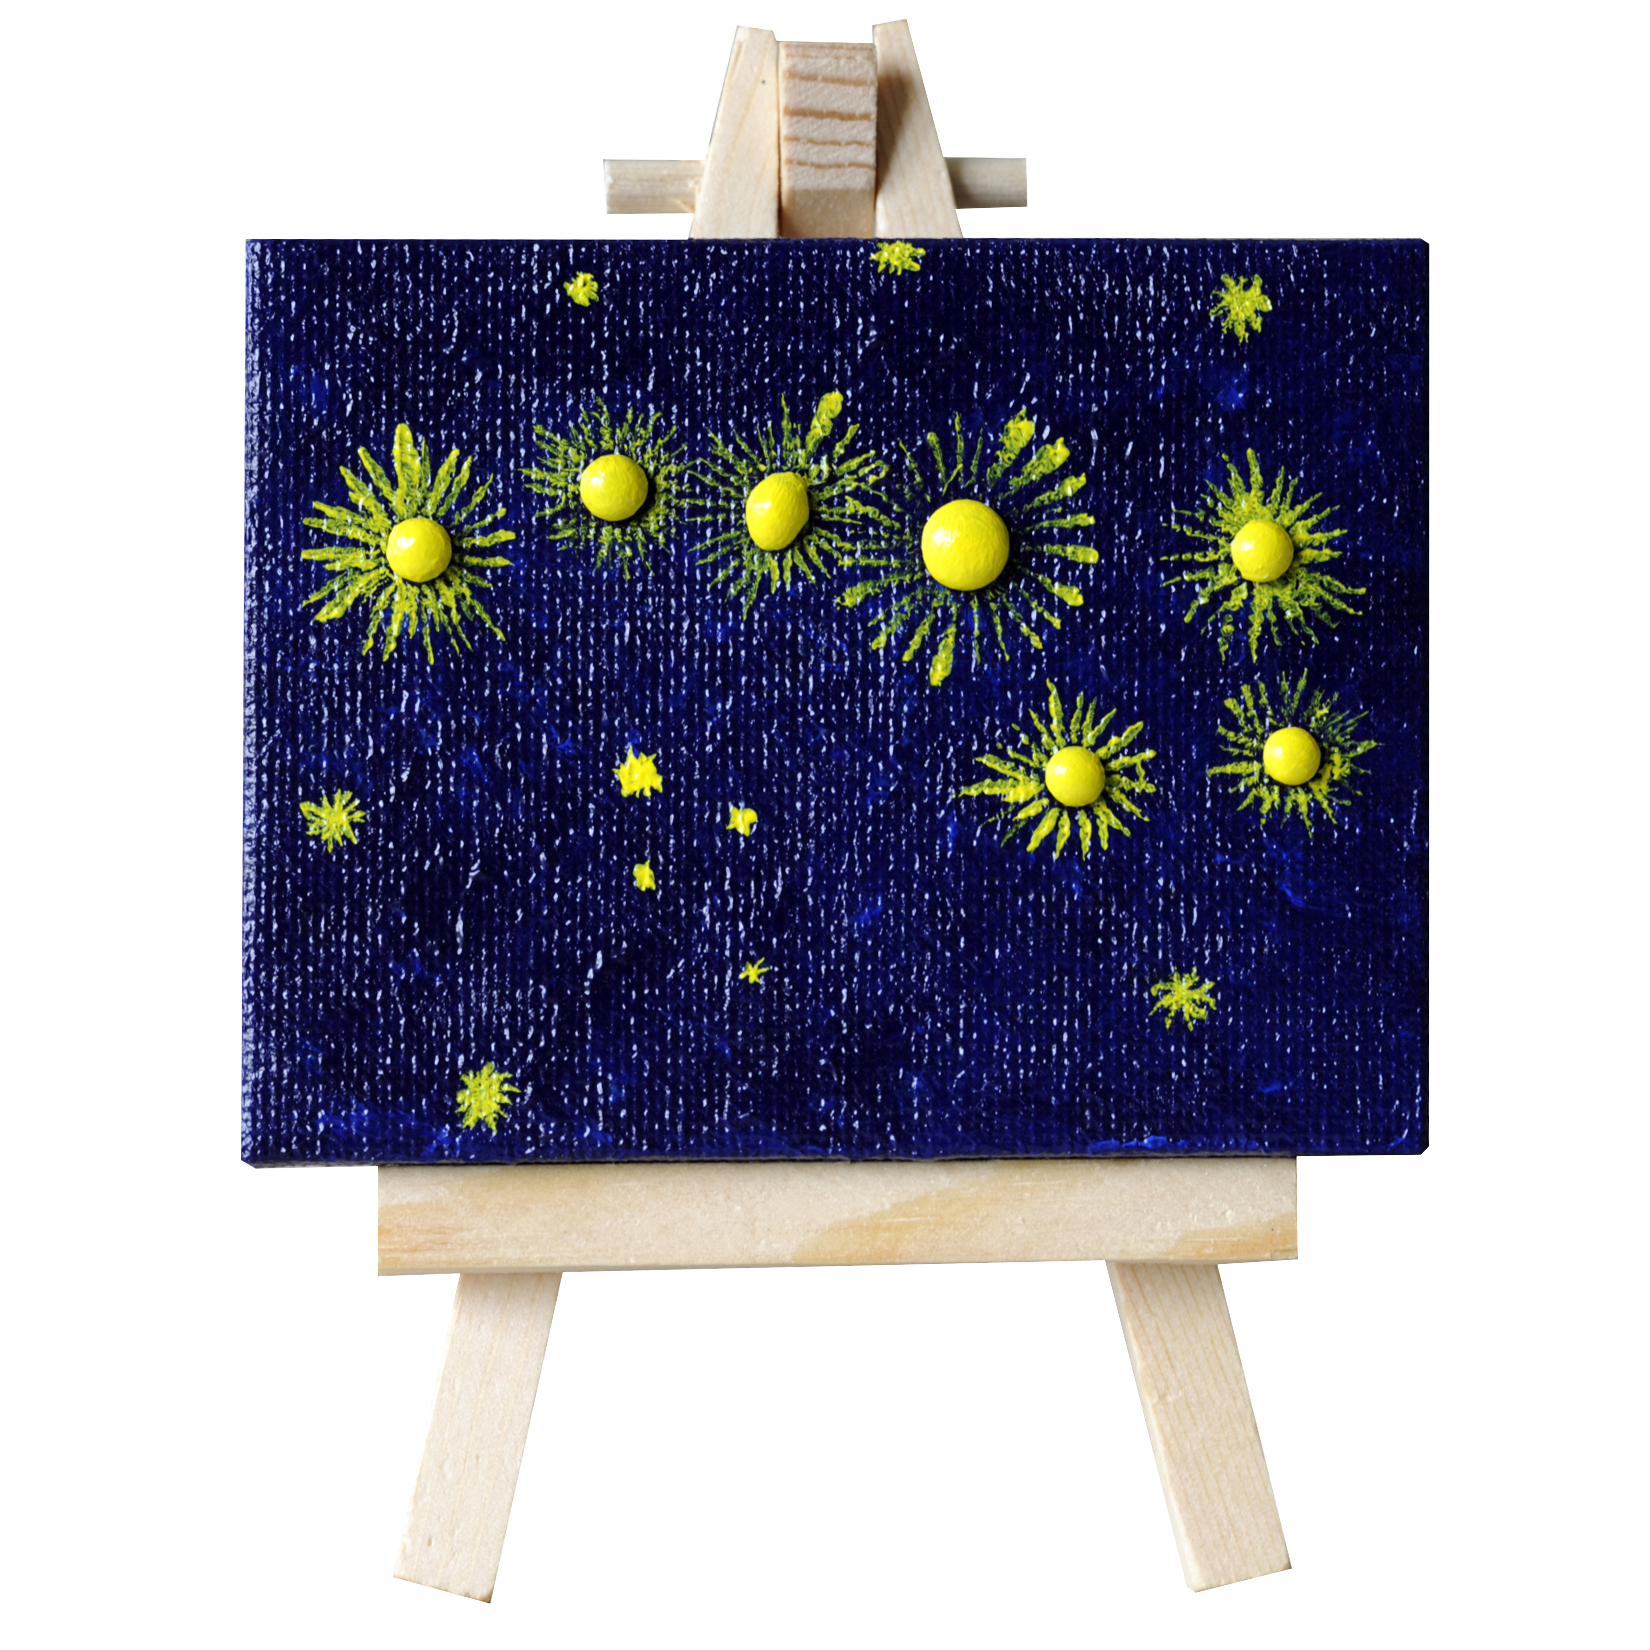 Mystarry night - mini-toile sur chevalet